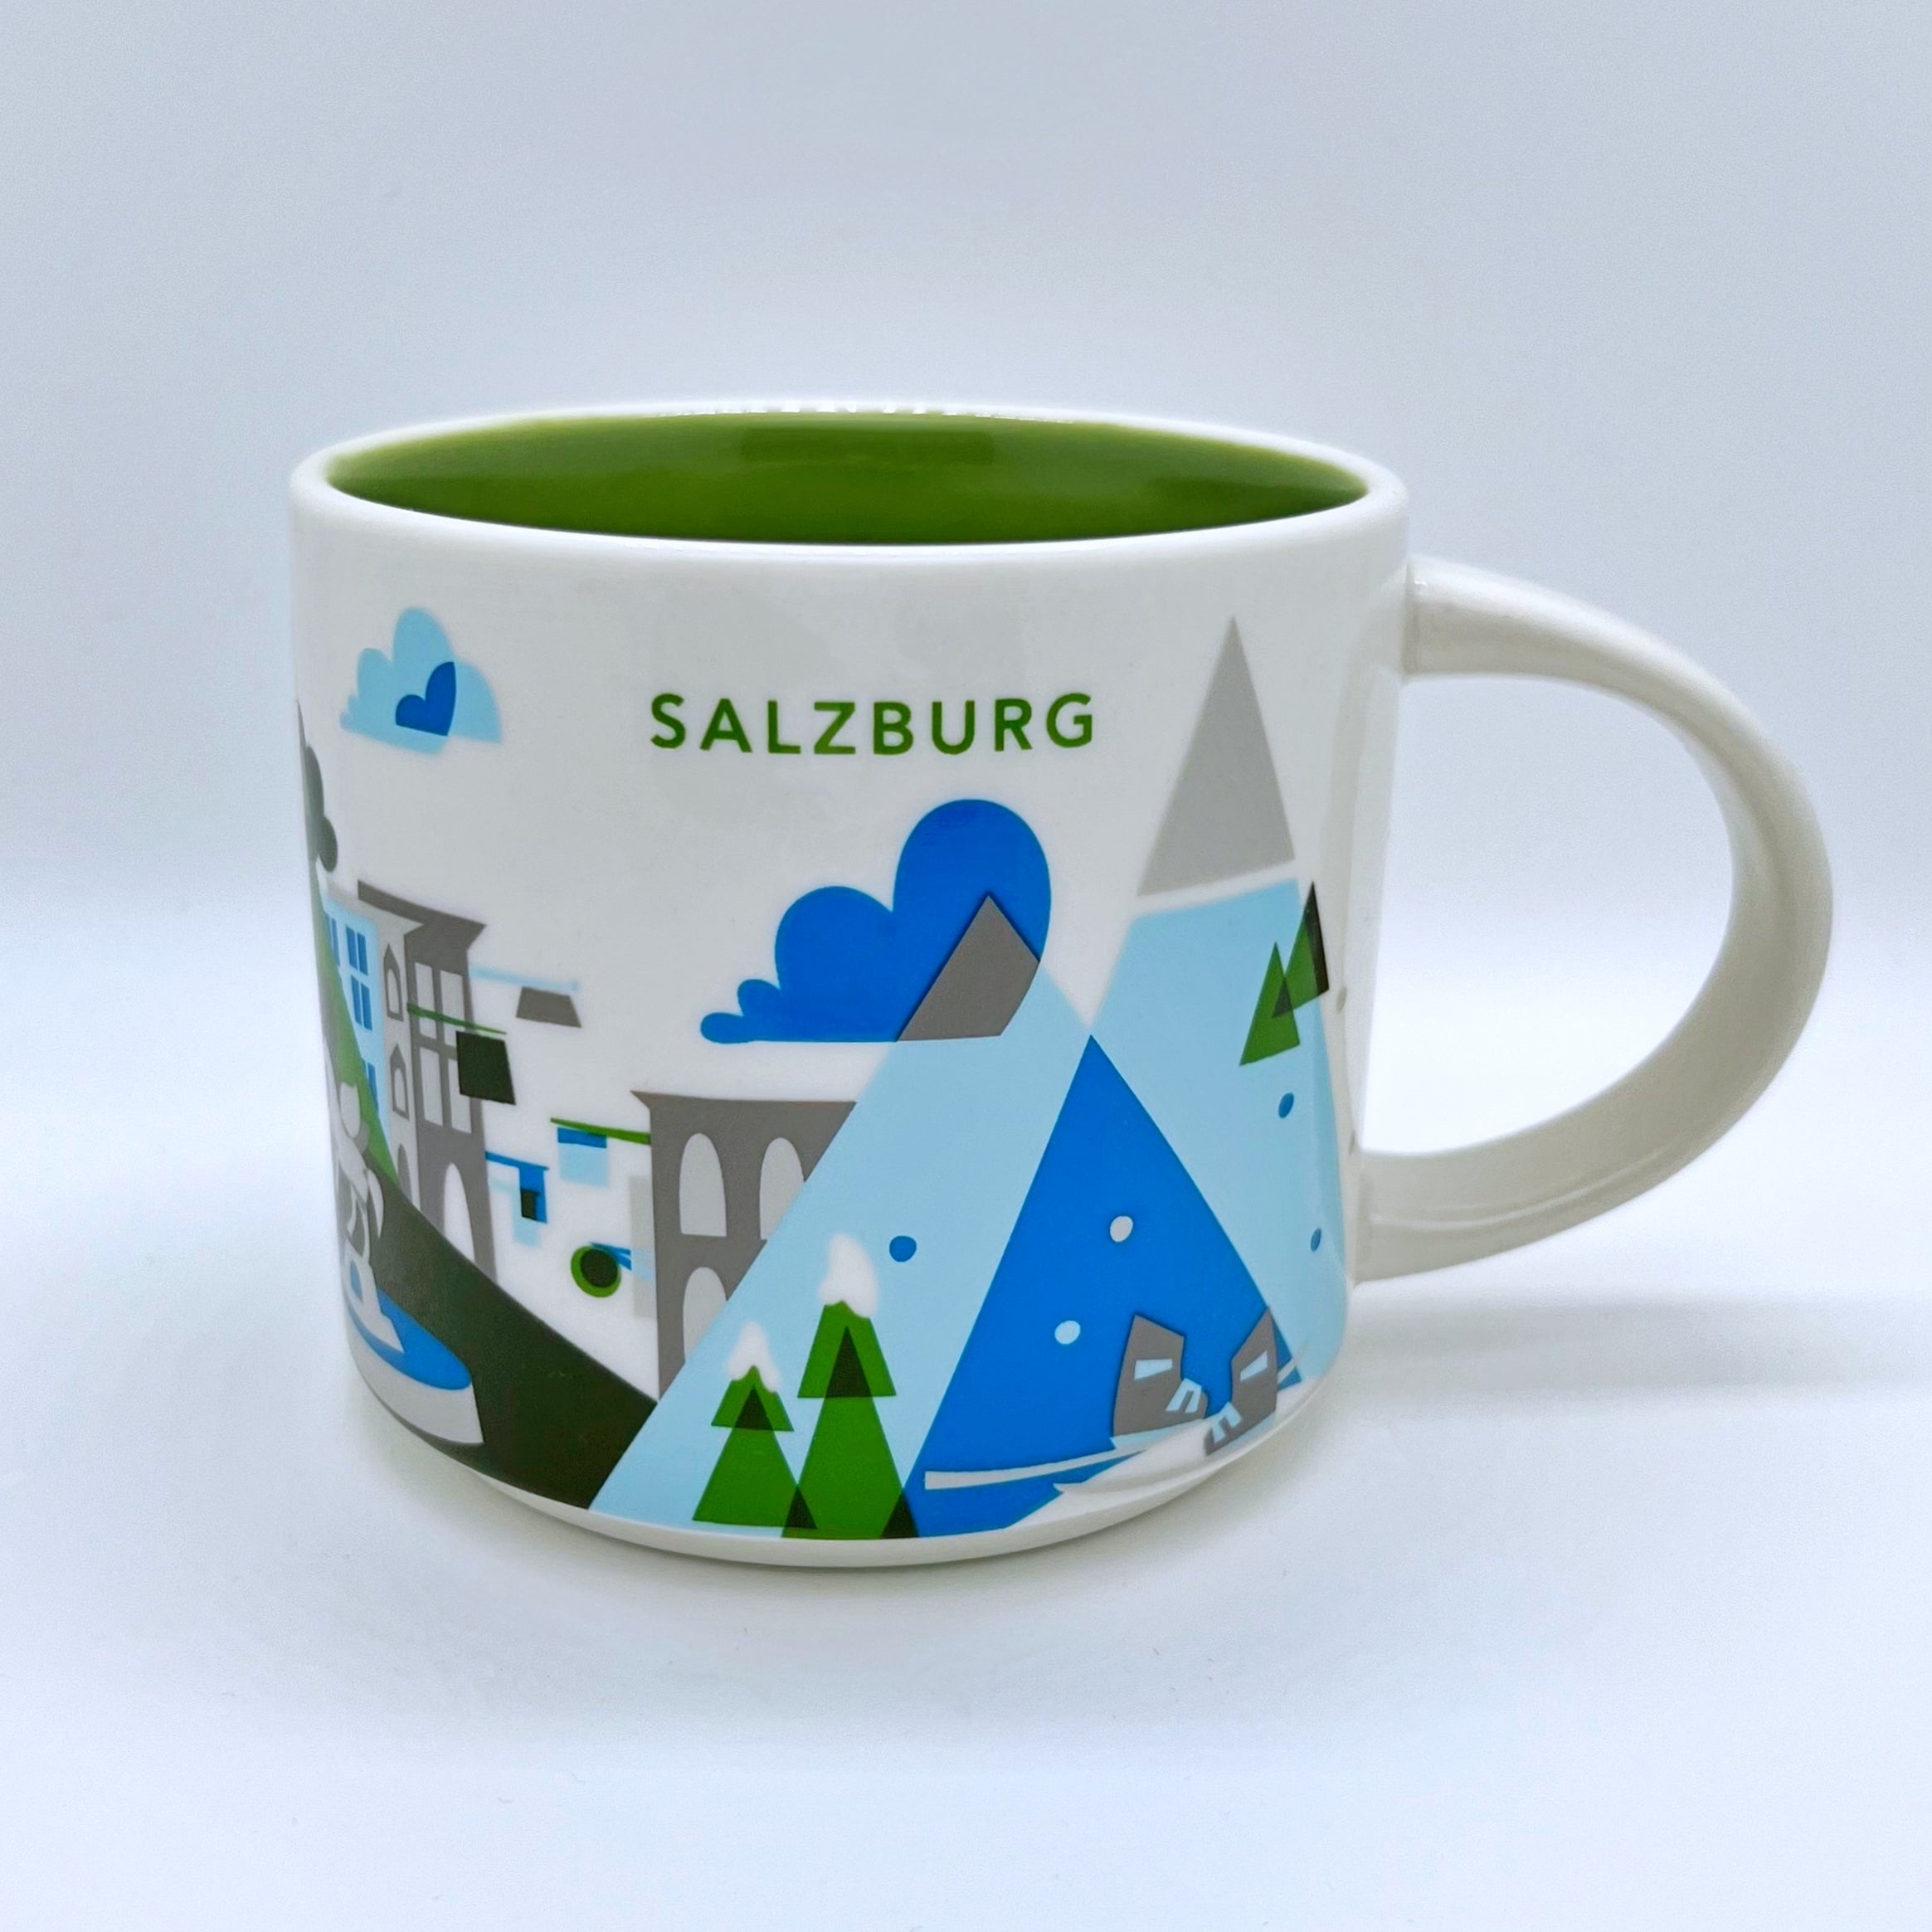 Kaffee Tee oder Cappuccino Tasse von Starbucks mit gemalten Bildern aus der Stadt Salzburg